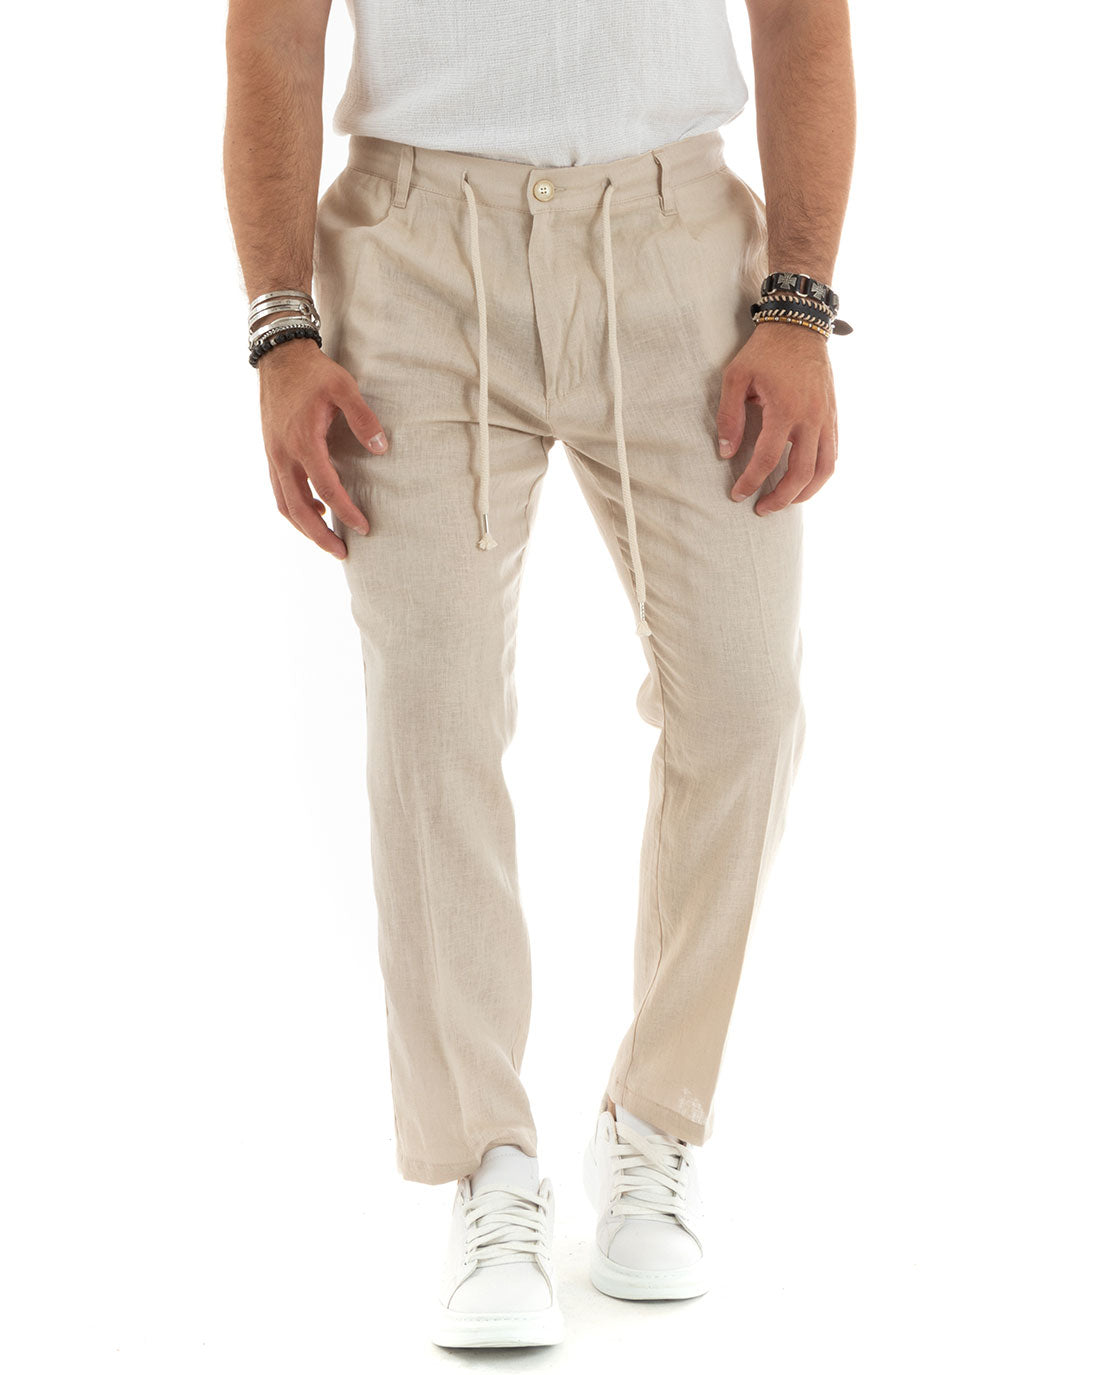 Pantaloni Uomo Lino Con Tasca America Basic Con Coulisse Elastico Sul Retro Casual Tinta Unita Beige GIOSAL-P5836A